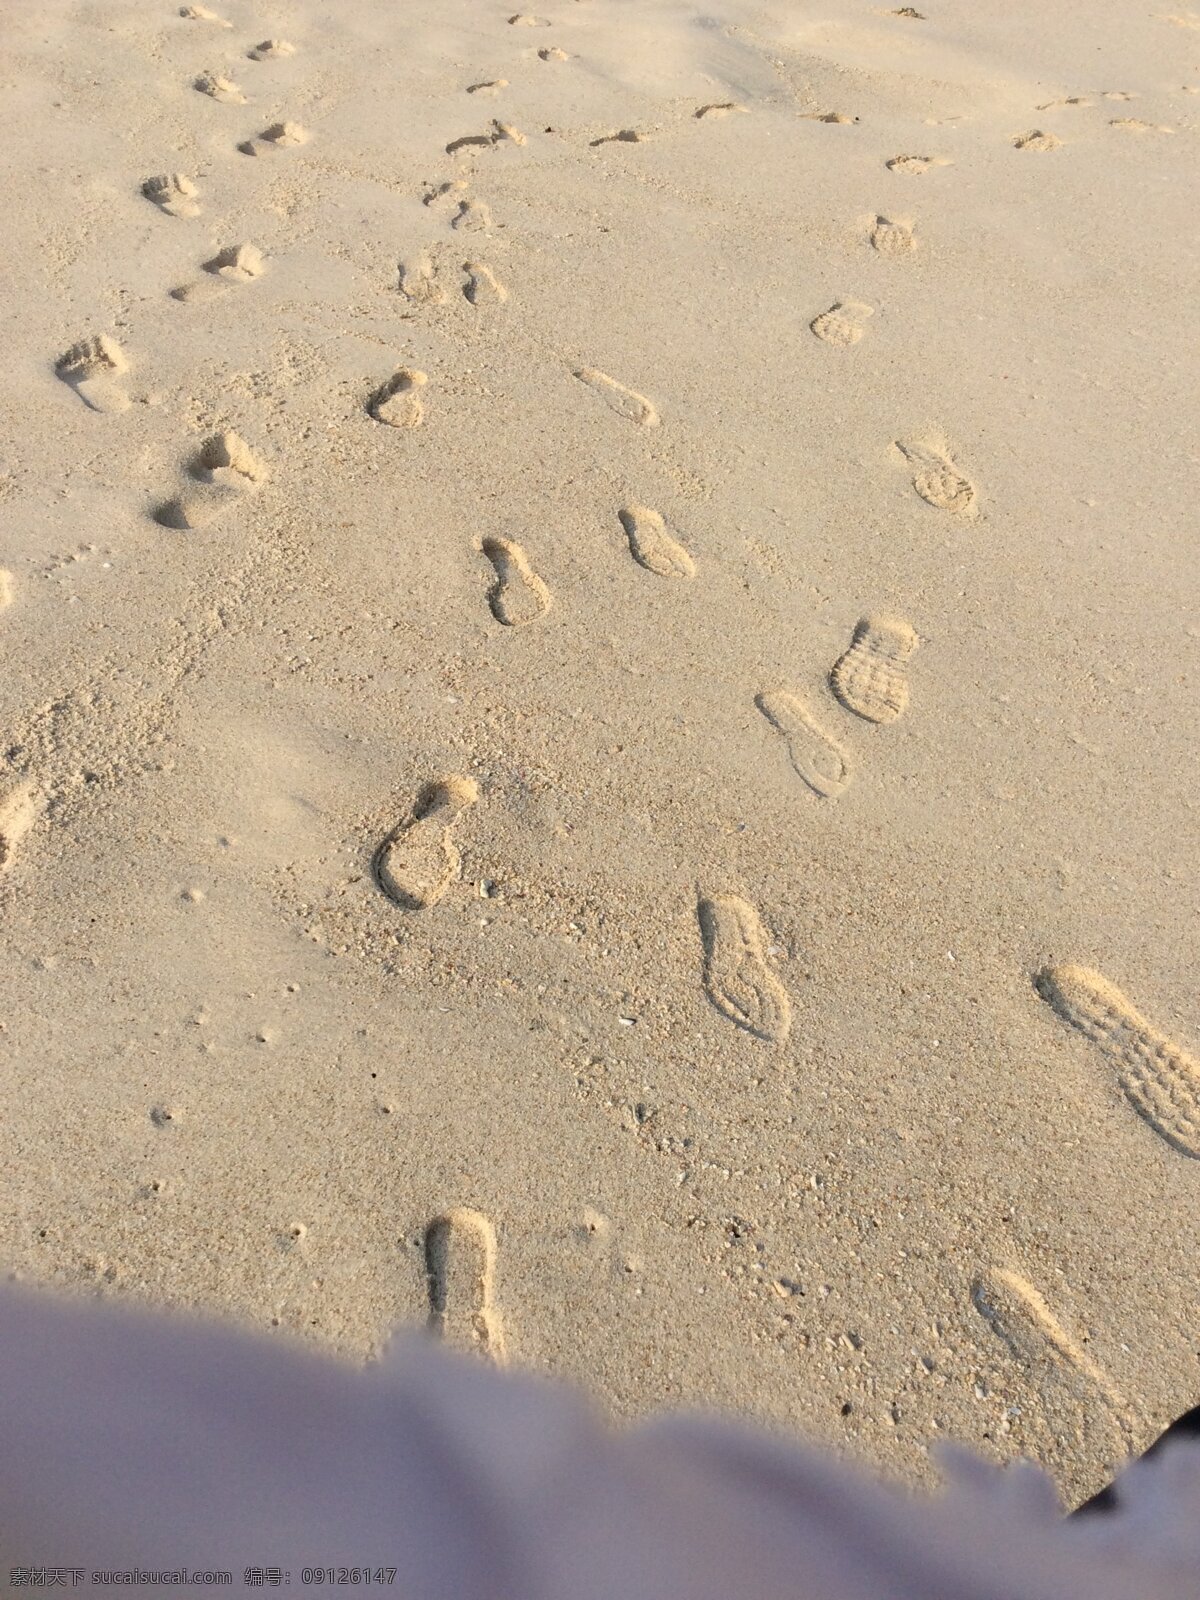 沙滩脚印 沙滩 脚 人 脚印 赤脚 脚步 脚趾 剪影 设计元素